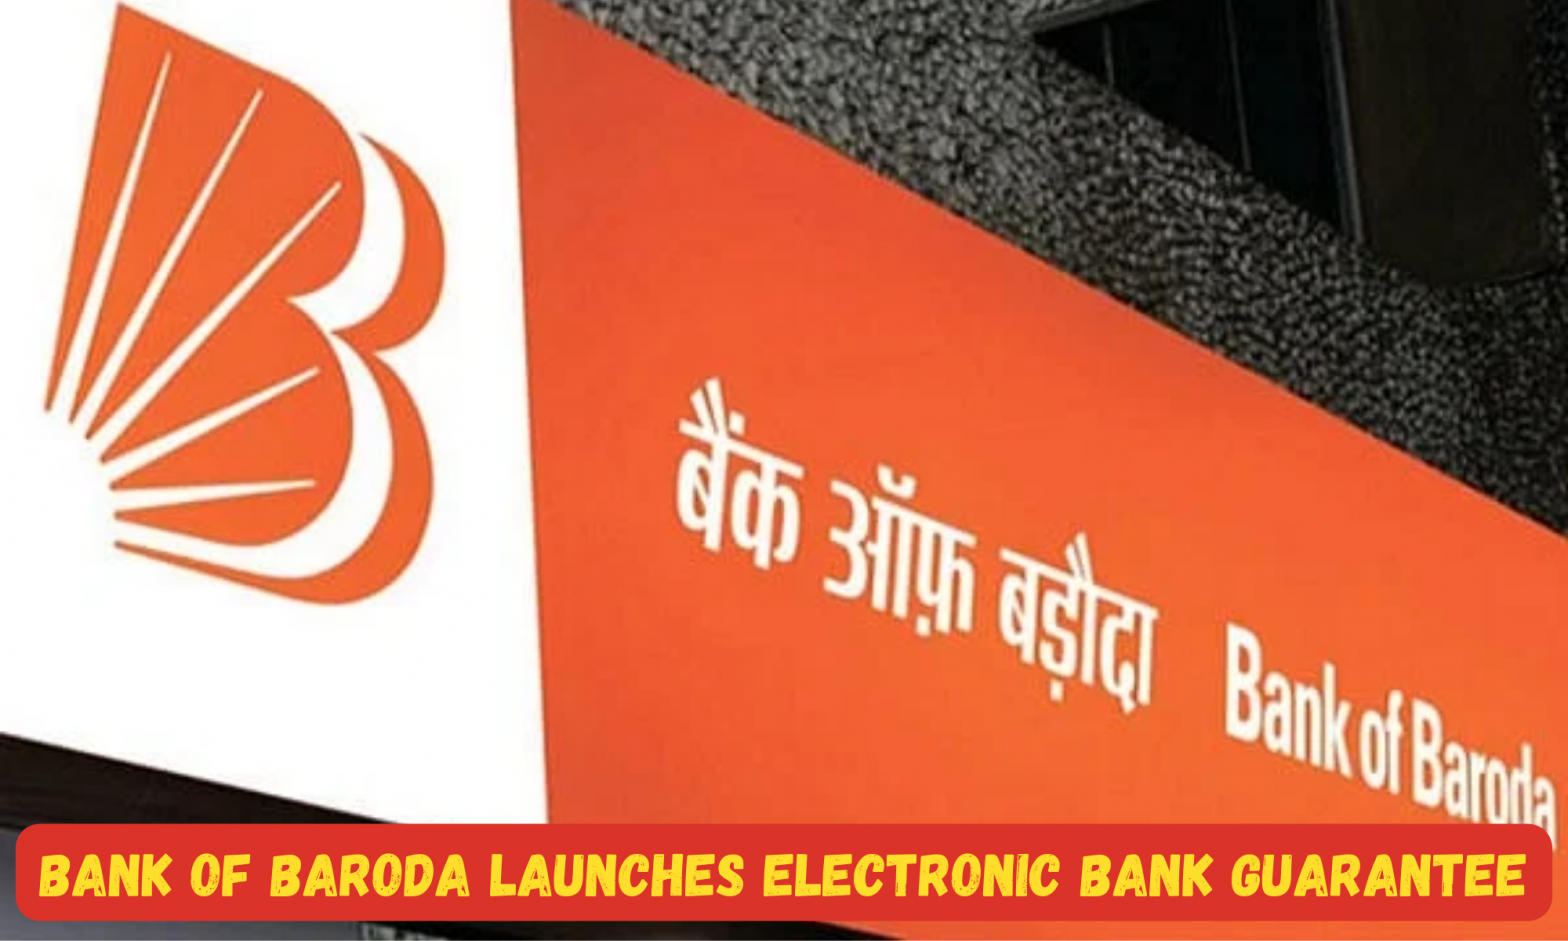 Bank of Baroda launches Electronic Bank Guarantee